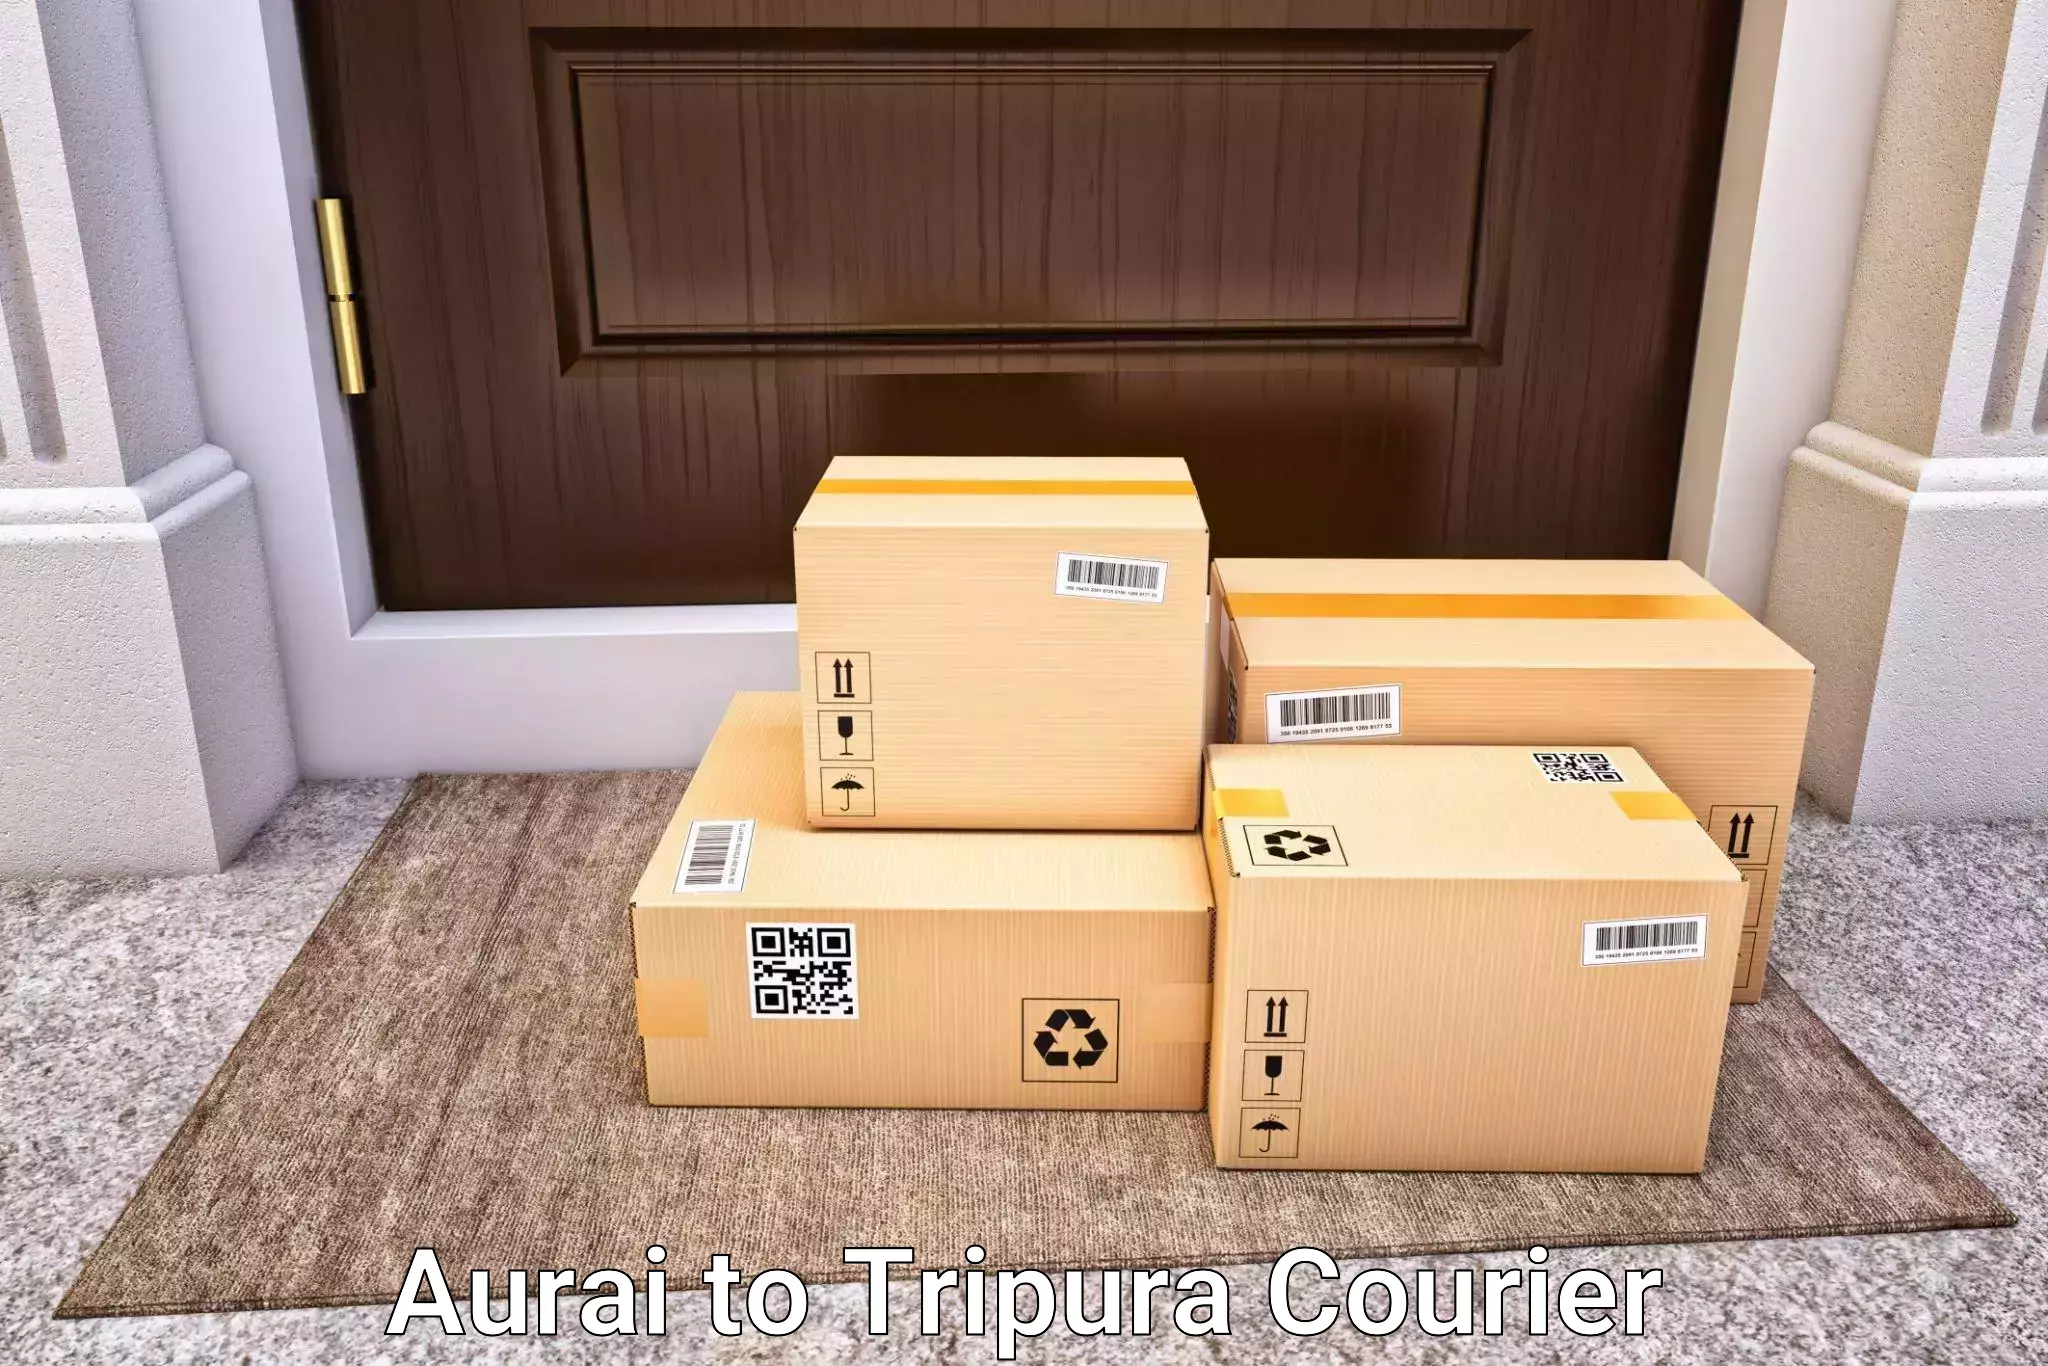 Doorstep luggage collection Aurai to Manu Bazar